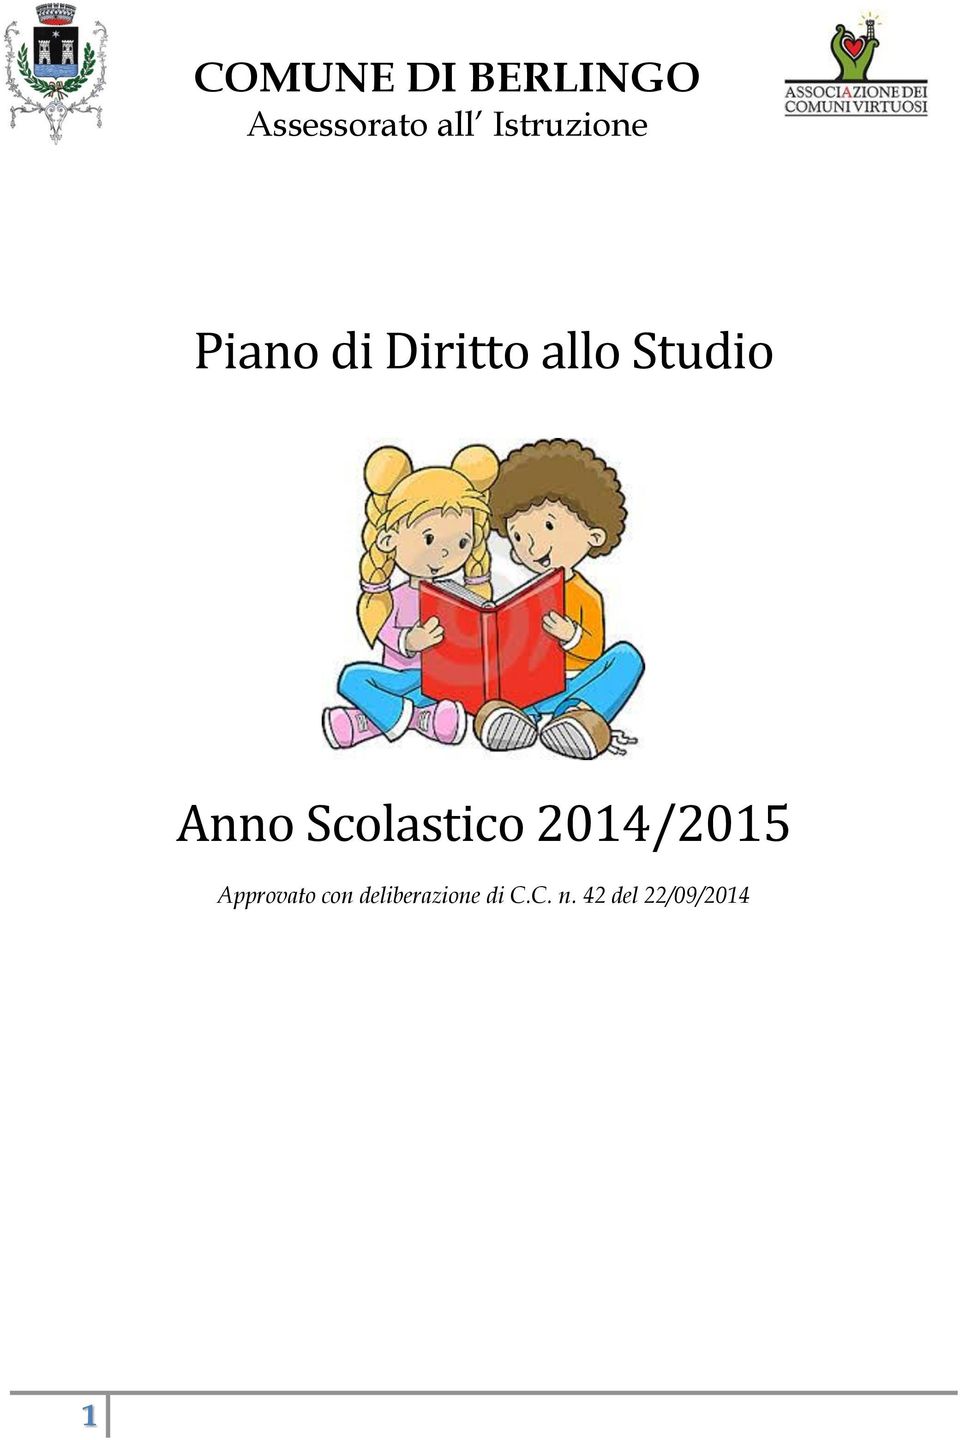 Anno Scolastico 2014/2015 Approvato con